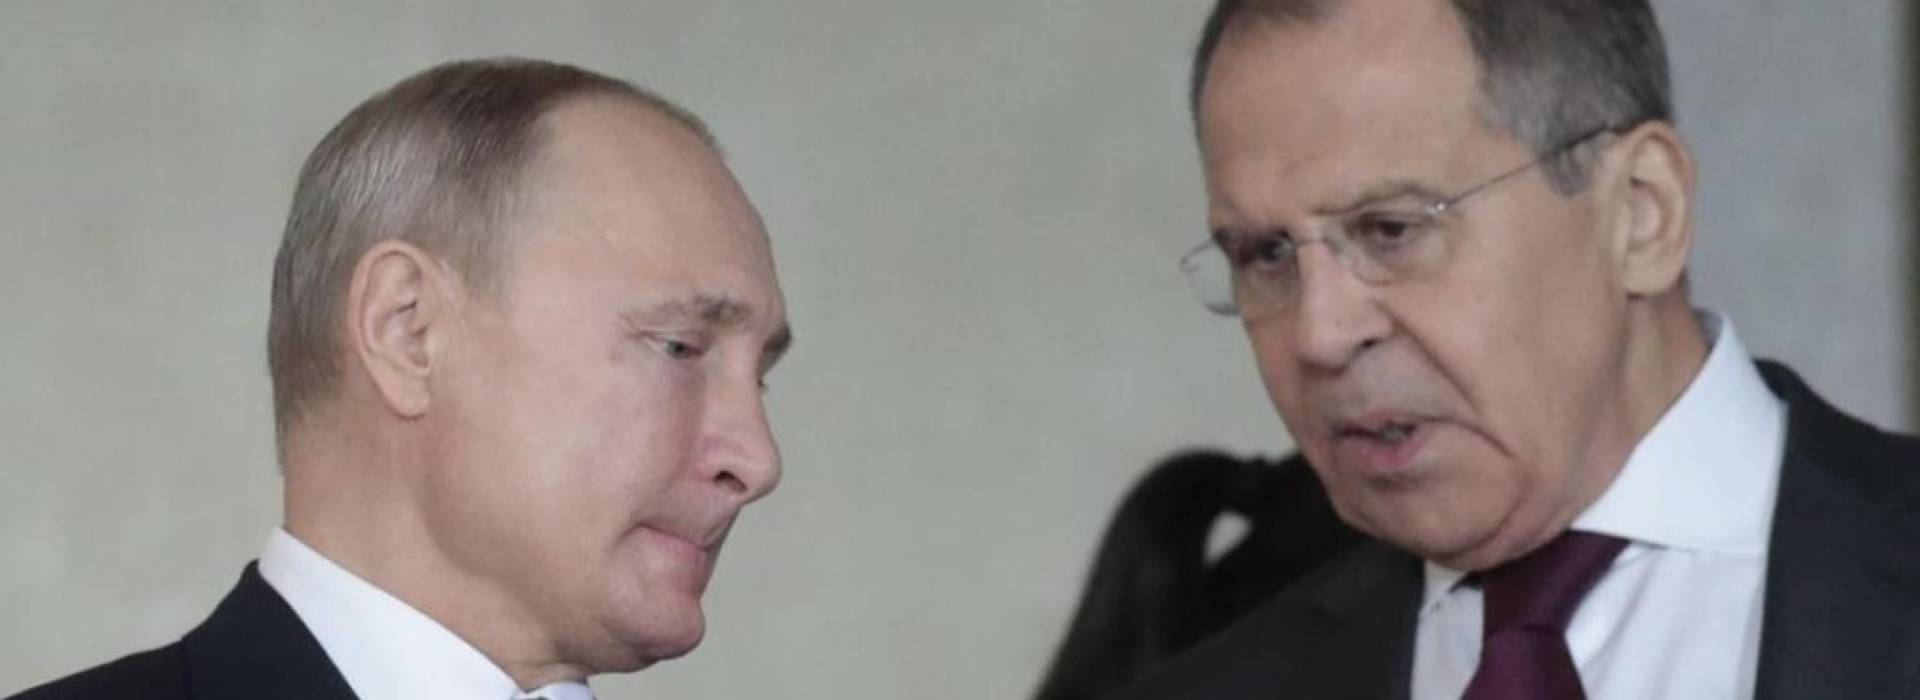 L'Unione europea congela i beni di Putin e Lavrov